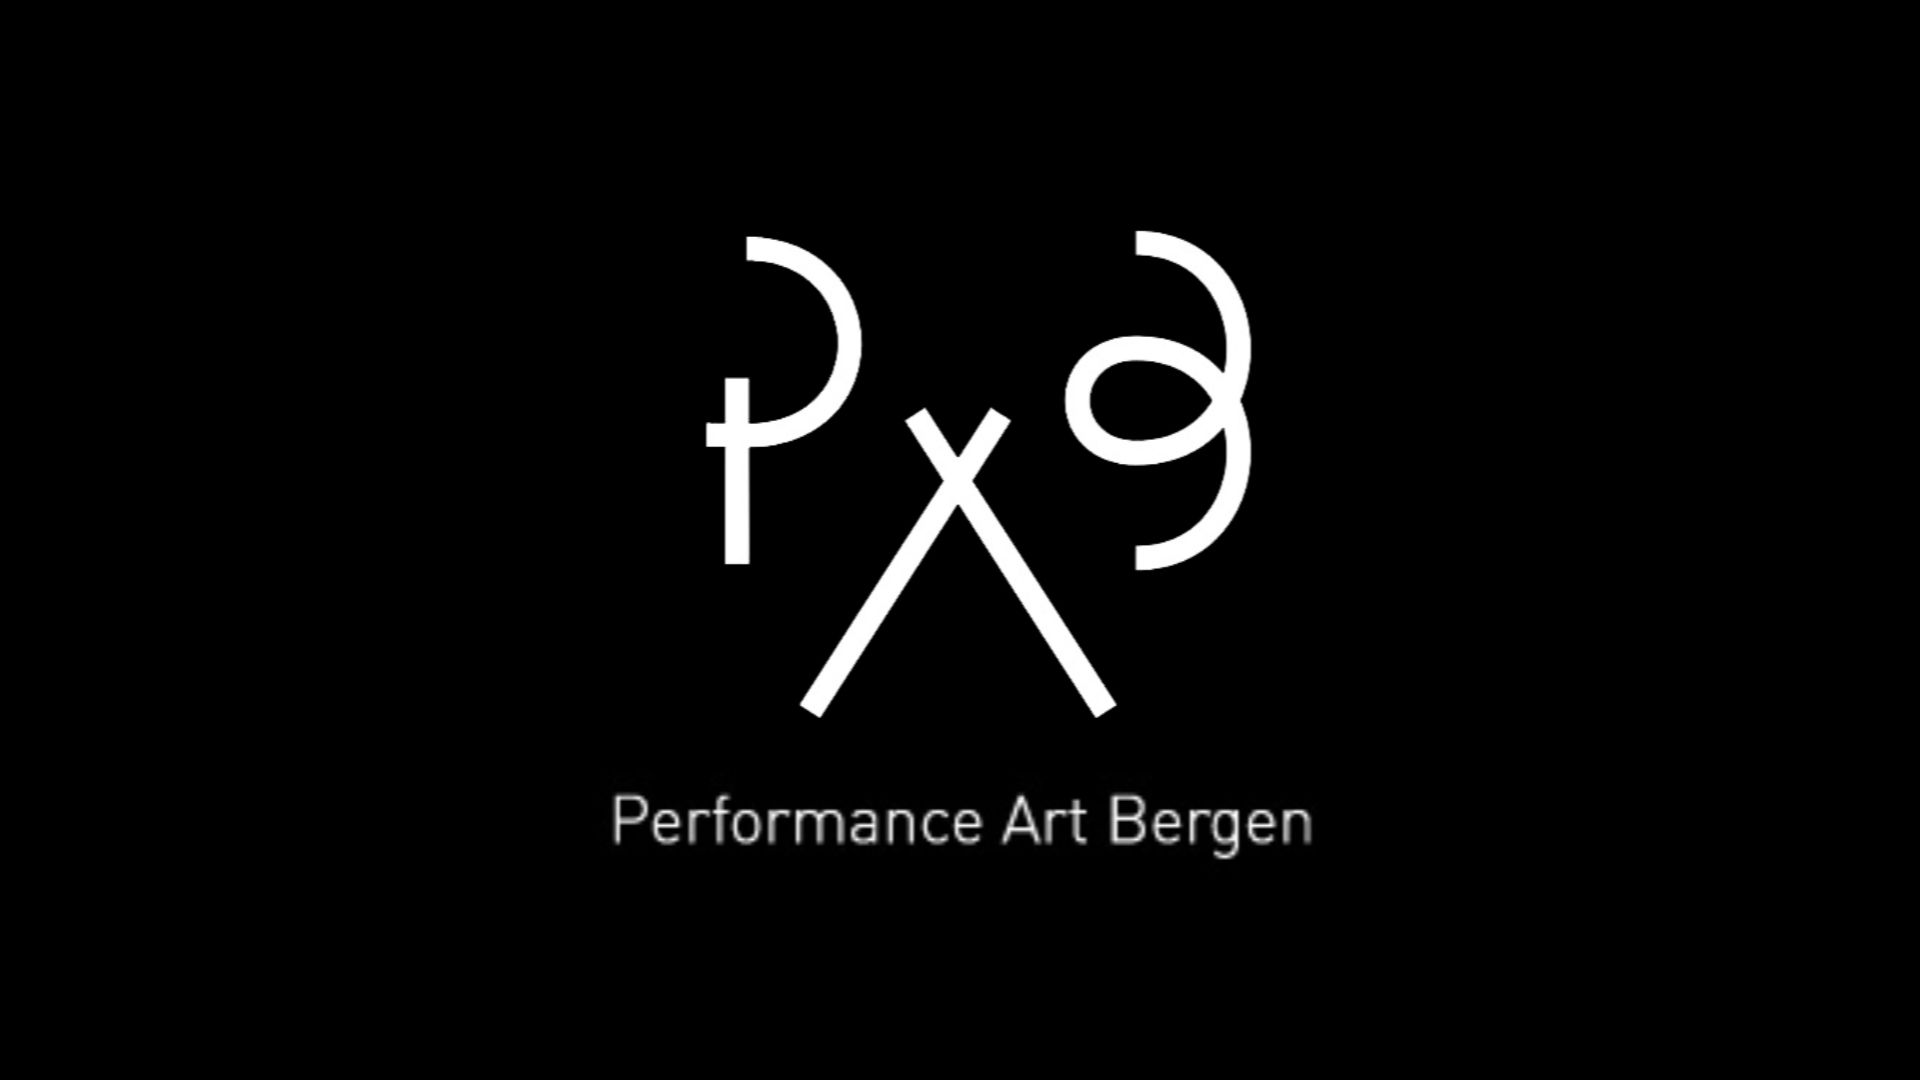 Performance Art Bergen